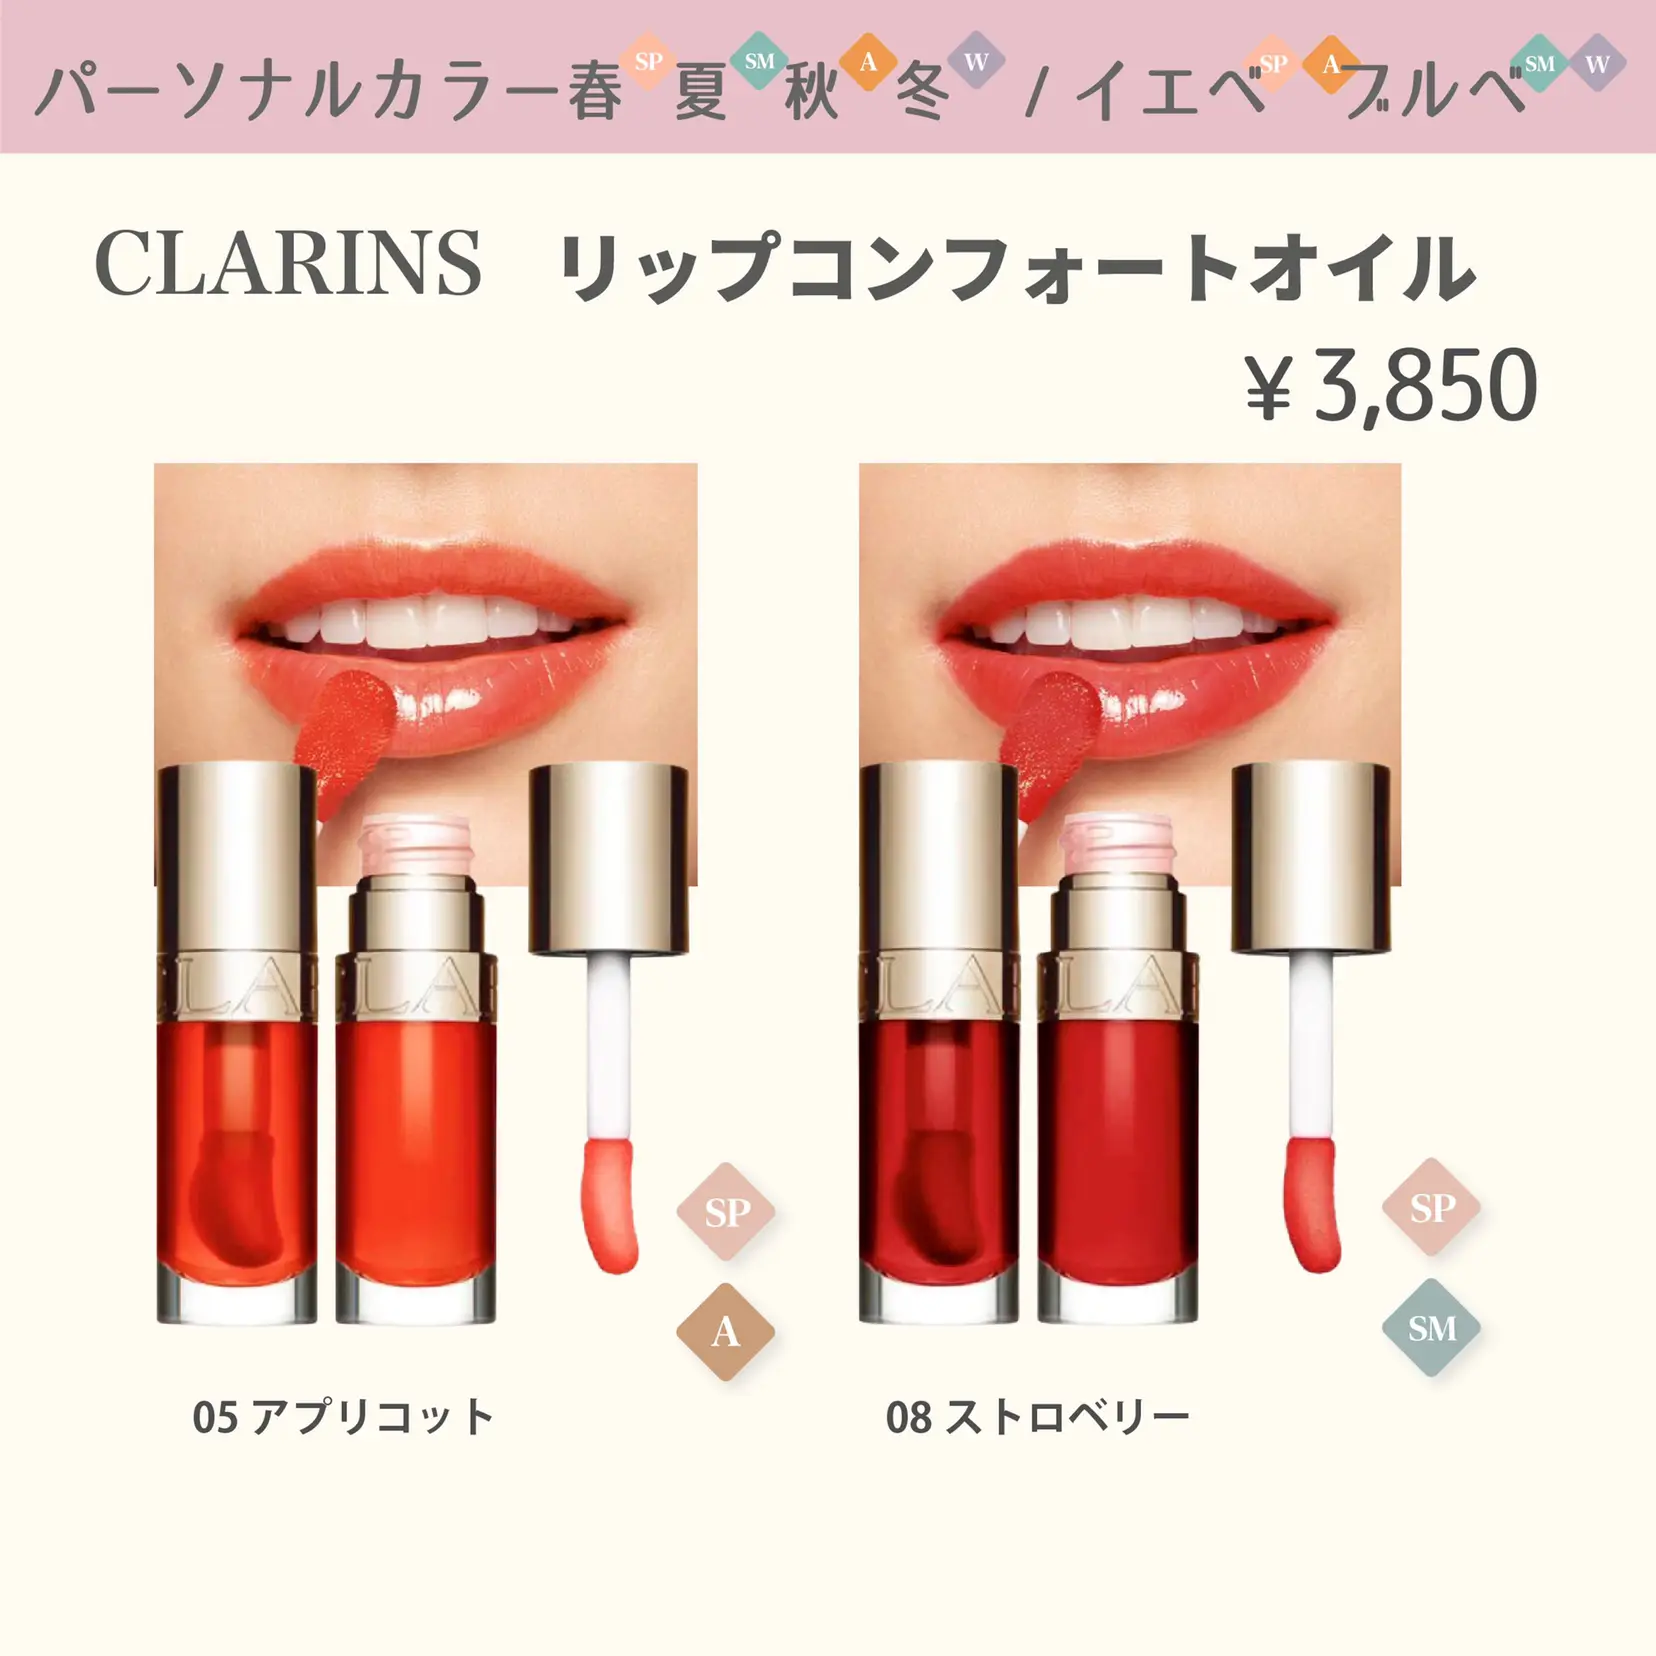 CLARINS クラランス 全8色 名品リップコンフォートオイル - ベース 